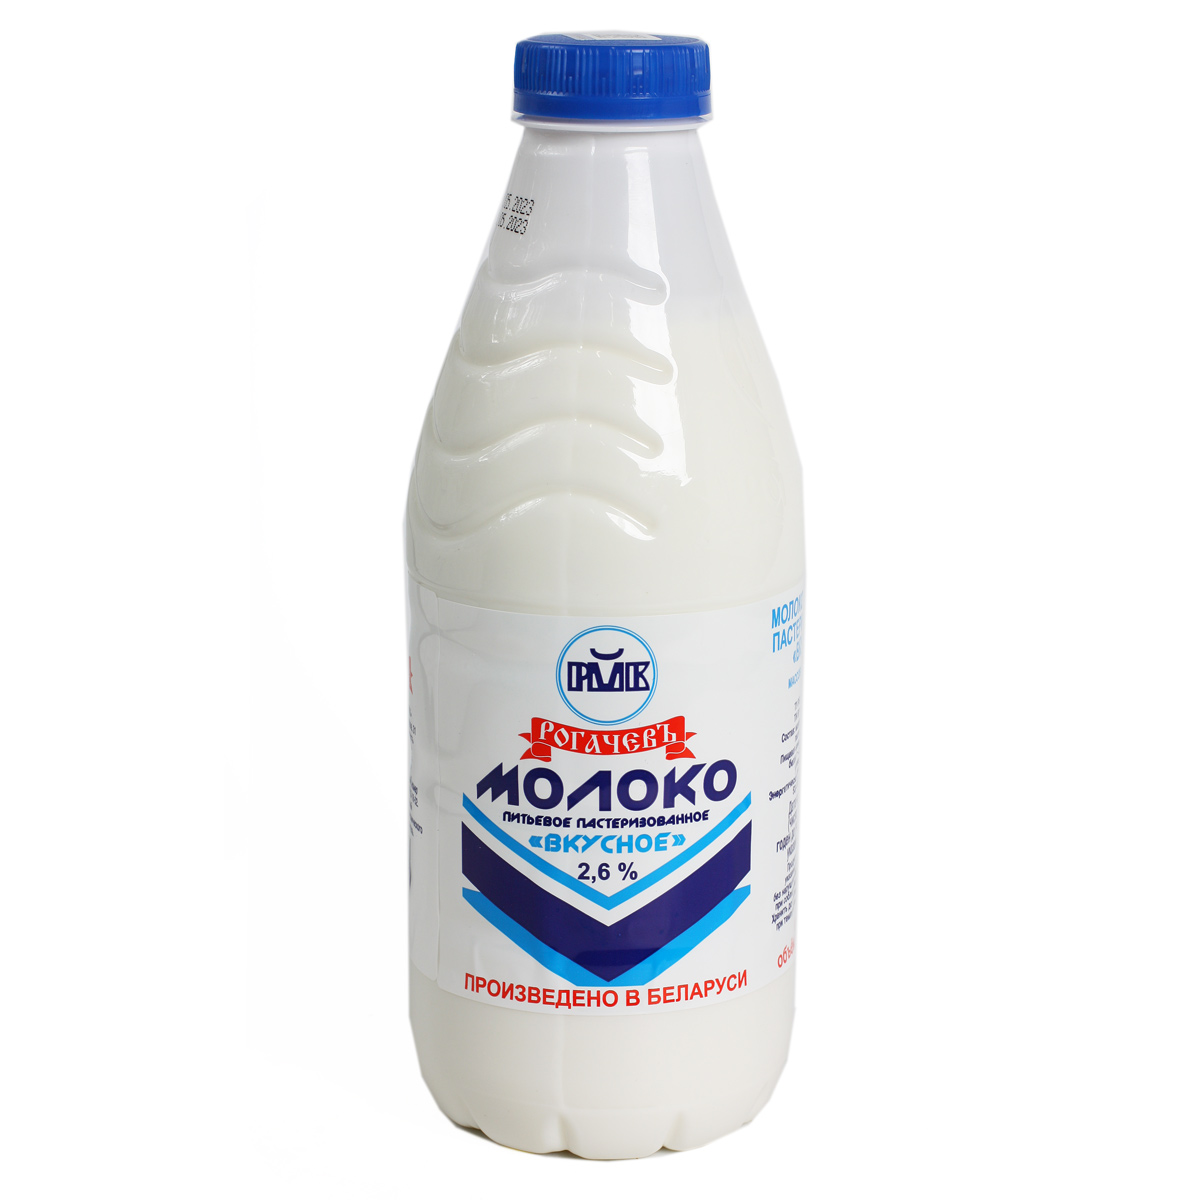 Рогачевъ молоко пастеризованное 2.6 % 900мл